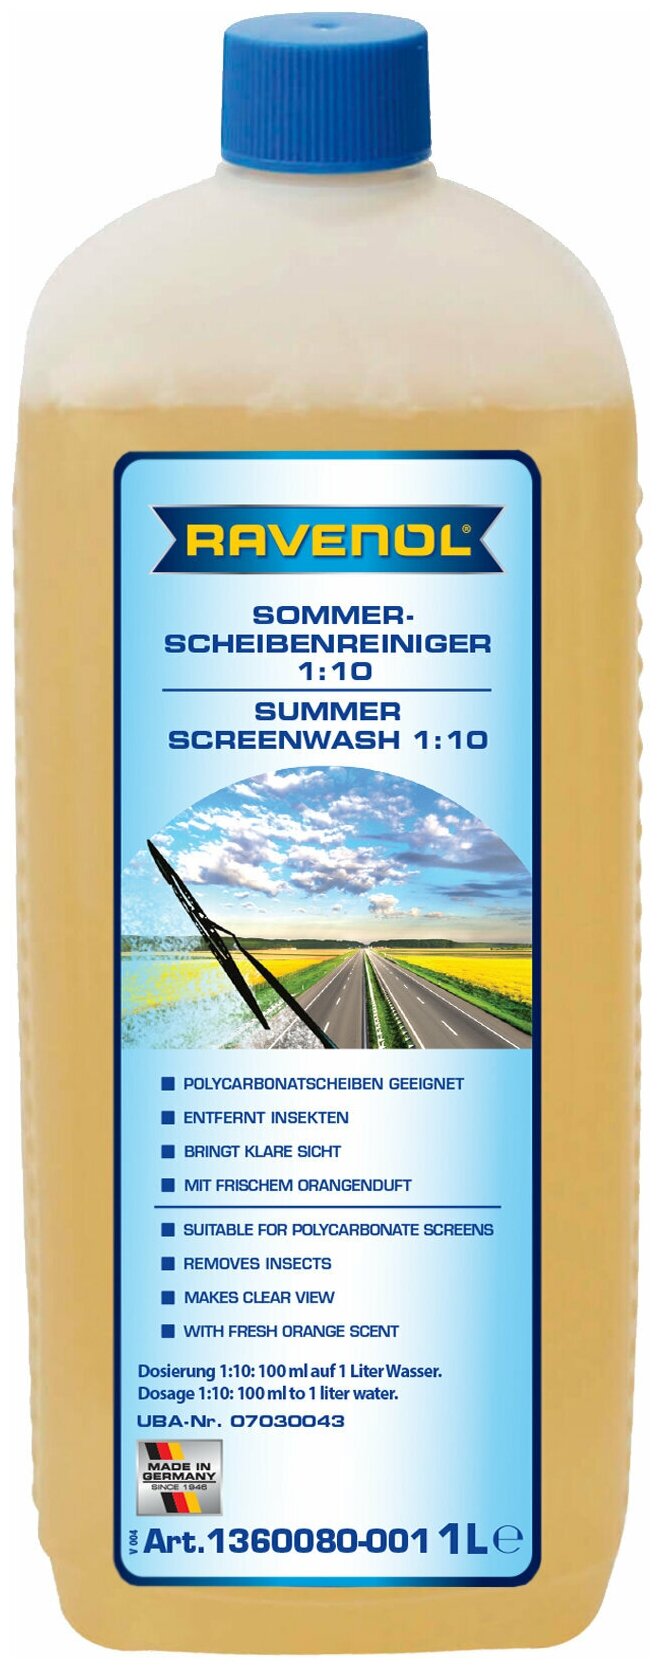 Омыватель летний концентрат RAVENOL Sommerscheibenr.Konz. (Обзор) 1:10 (1л), 1360080-001-01-000